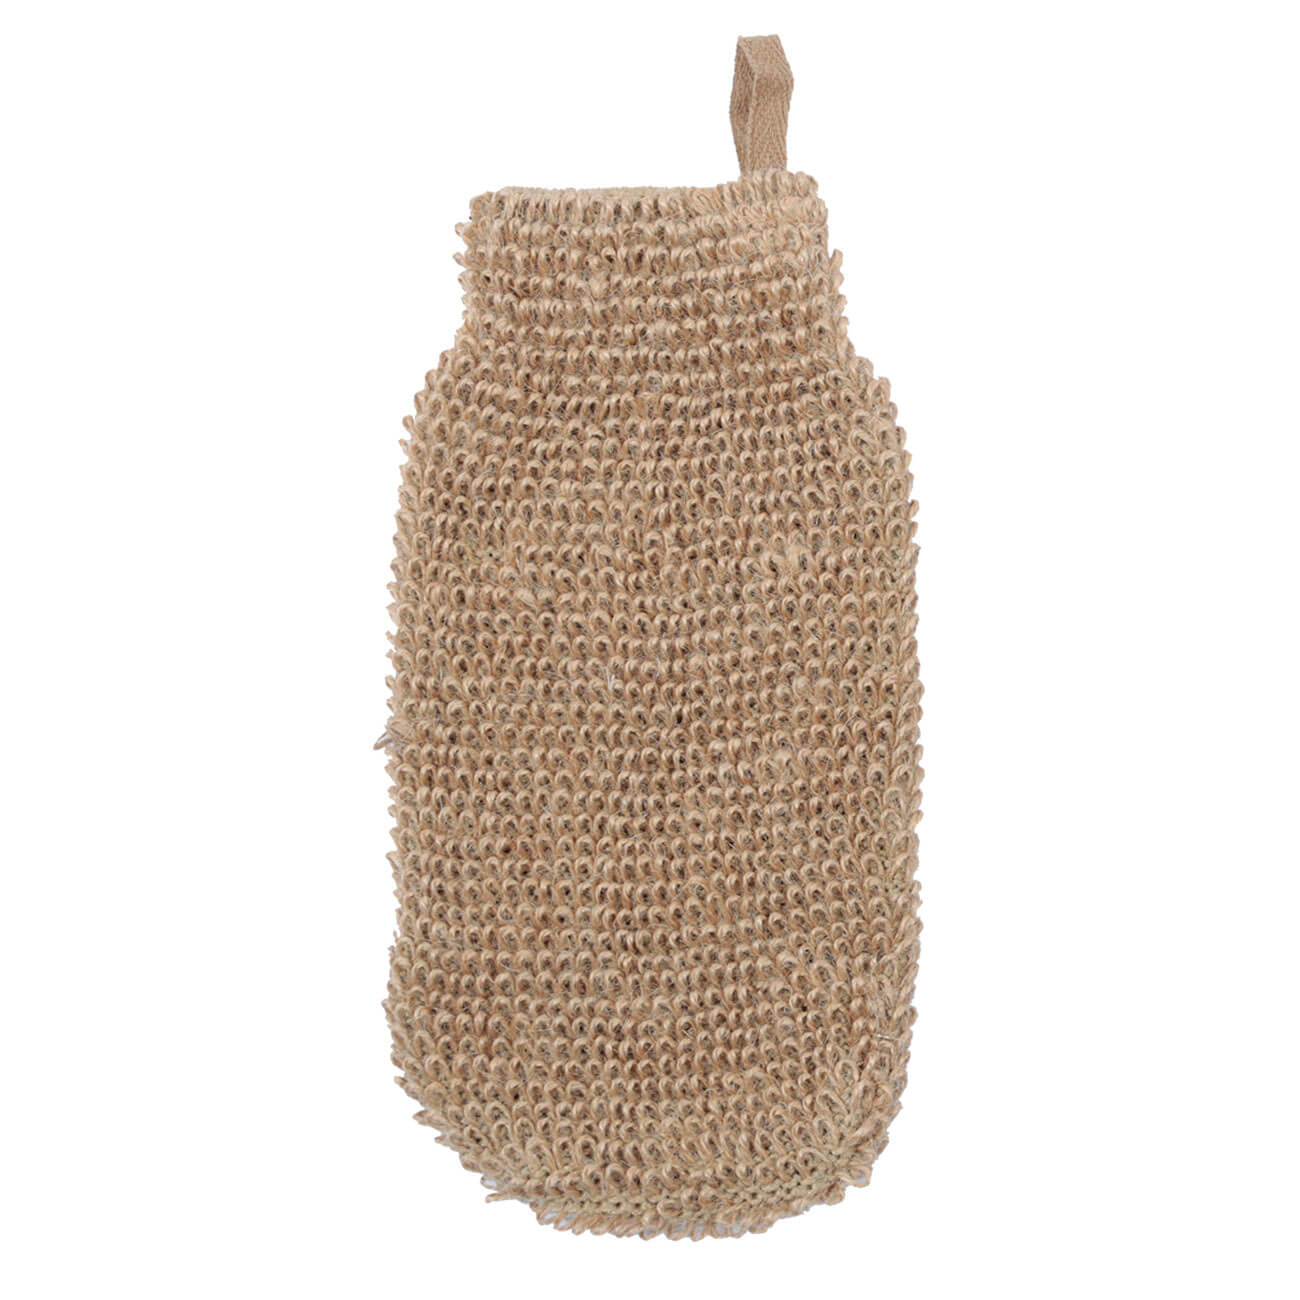 Мочалка-варежка для мытья тела, 10,5х21,5 см, конопляное волокно, бежевая, Eco life открывалка для бутылок и банок 18 см сталь растительное волокно бежевая deft